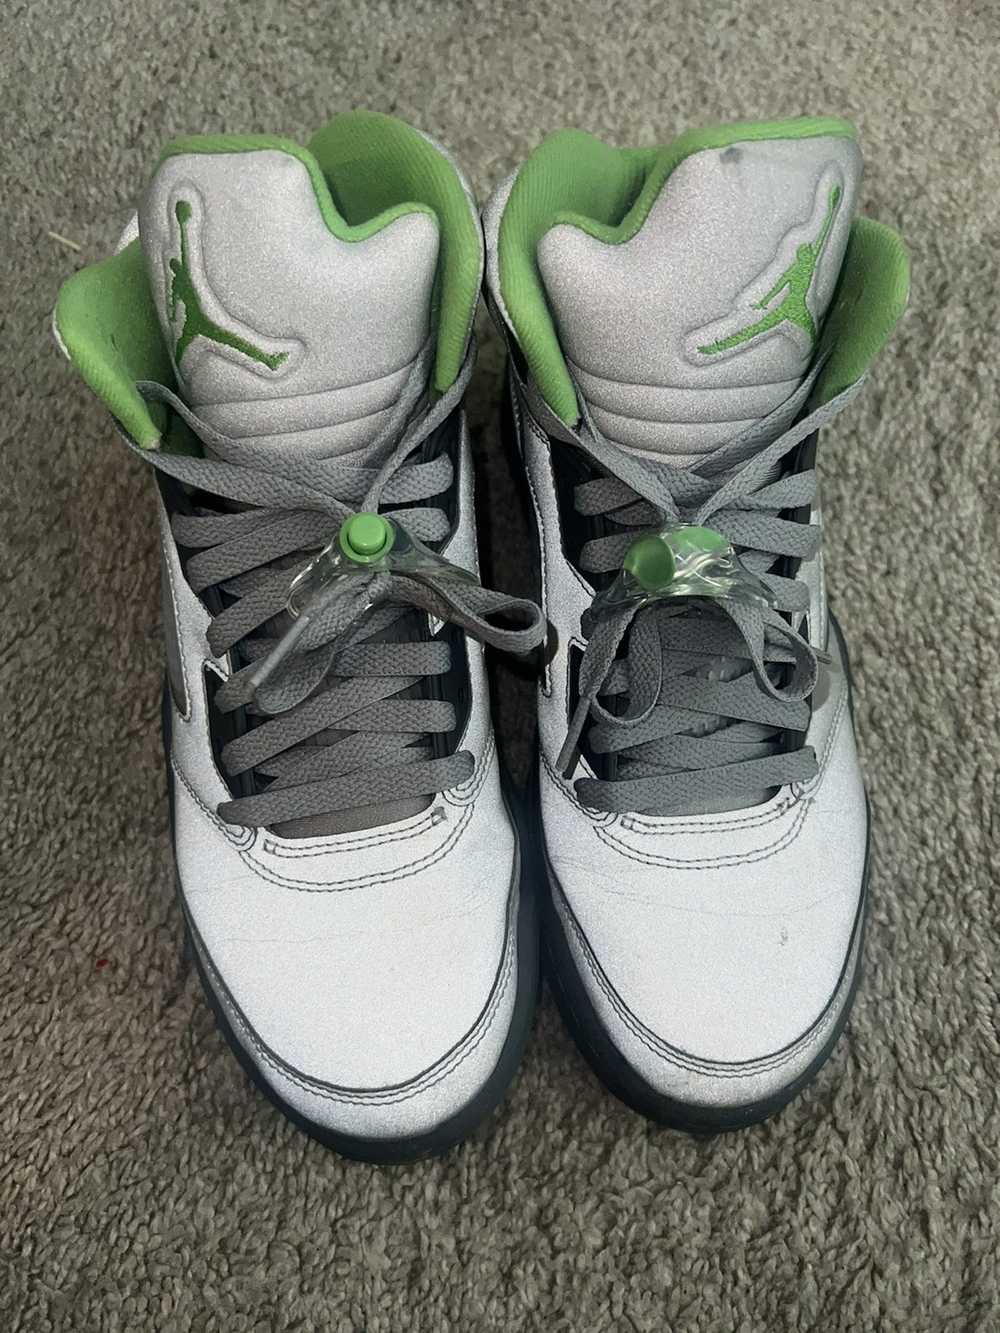 Jordan Brand × Nike Jordan 5 Retro “Green Bean” - image 8